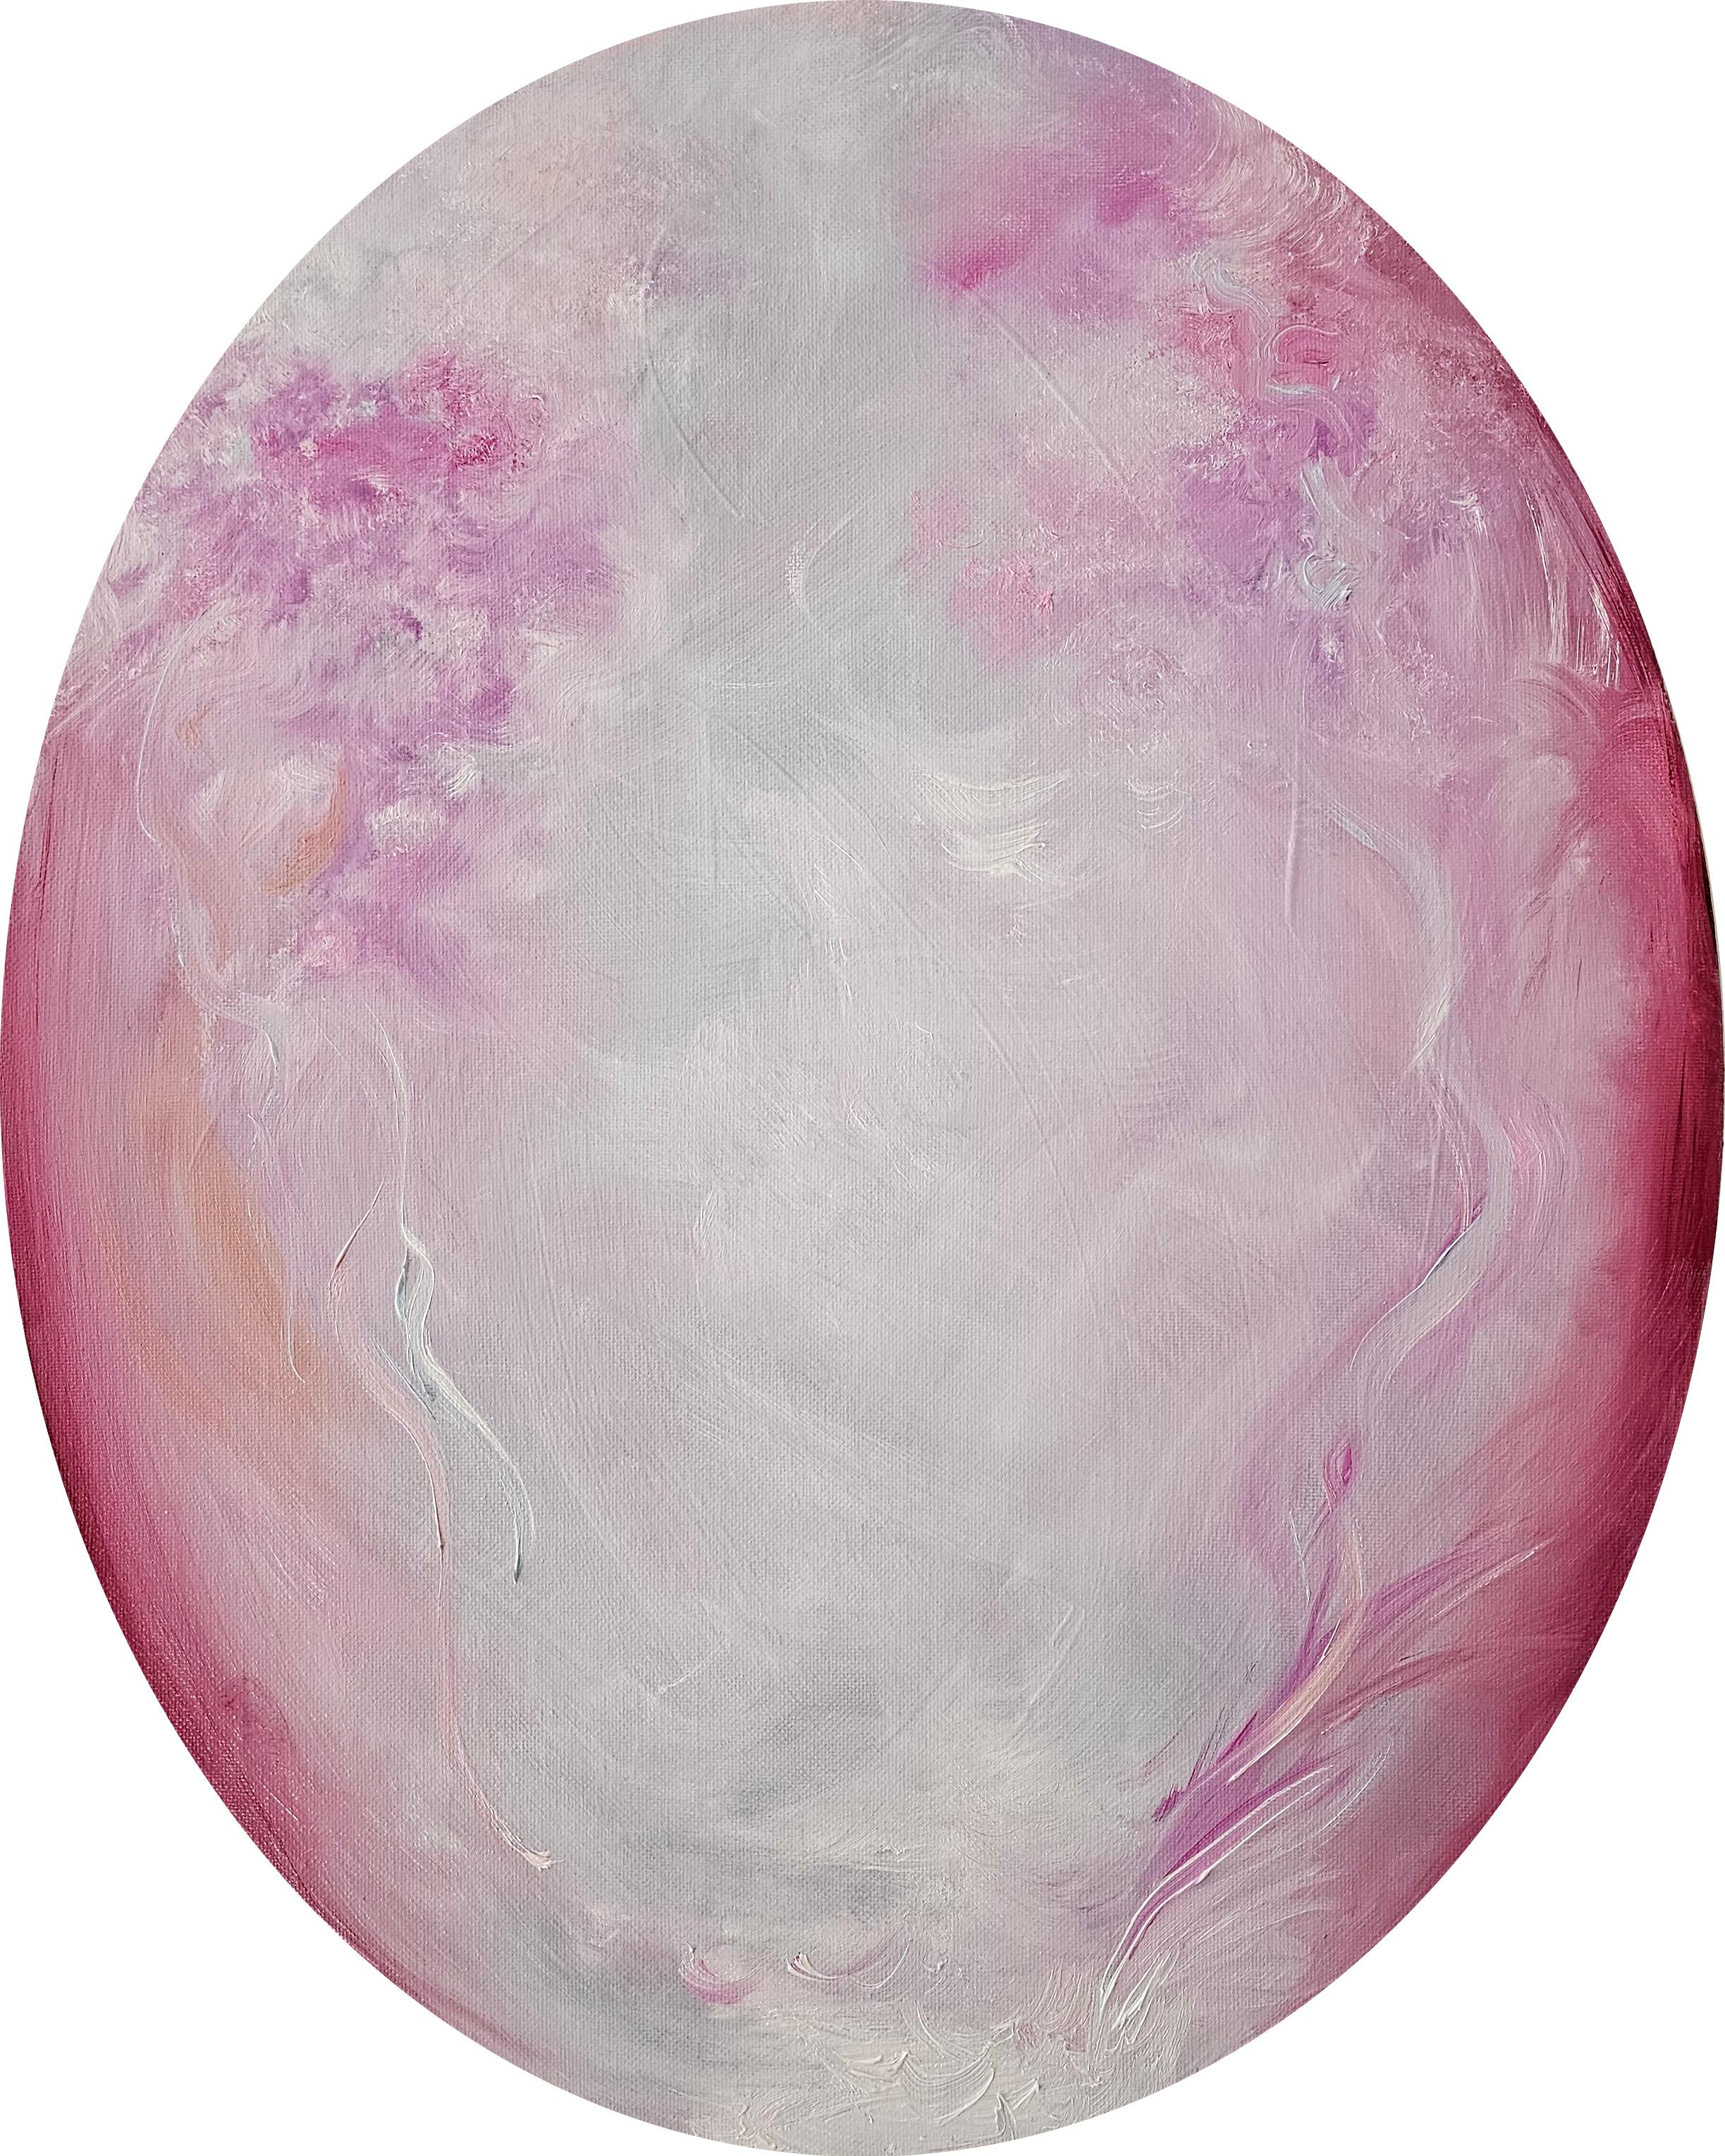 Jennifer L. Baker Abstract Painting – I fell in love - Rosa ovales abstraktes Gemälde